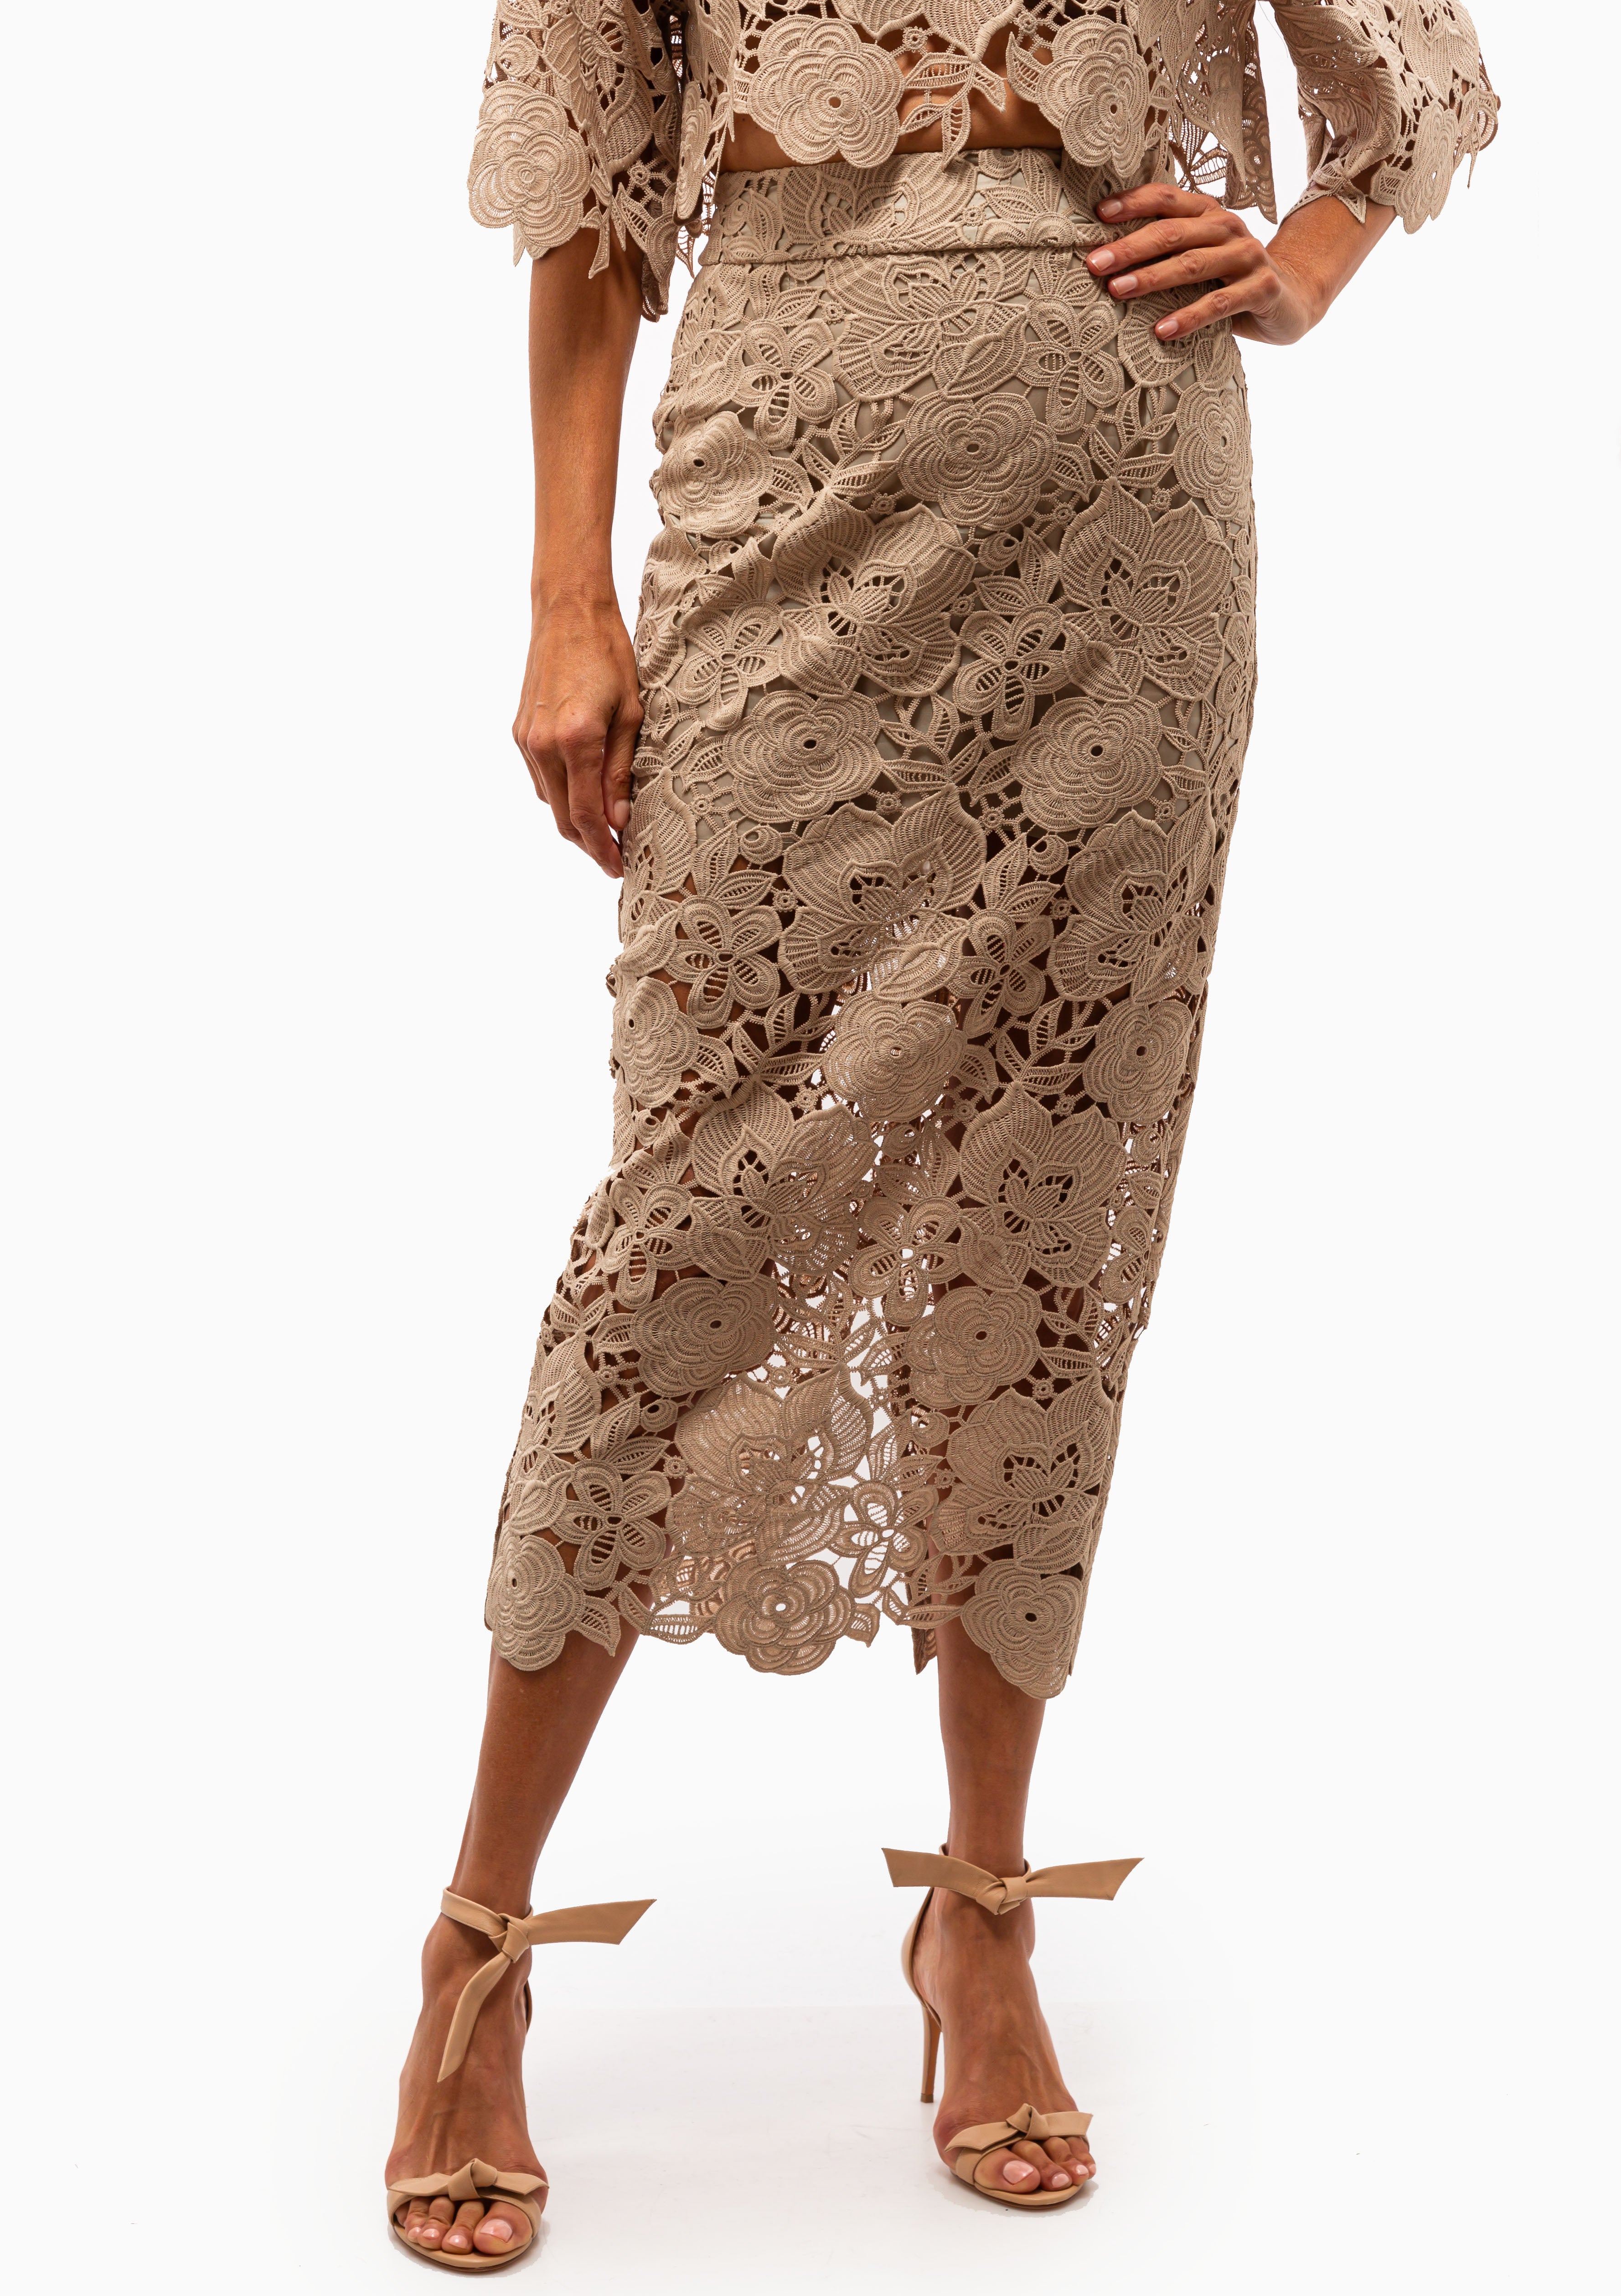 限定商品TODAYFUL Lace Pencil Skirt ロングスカート